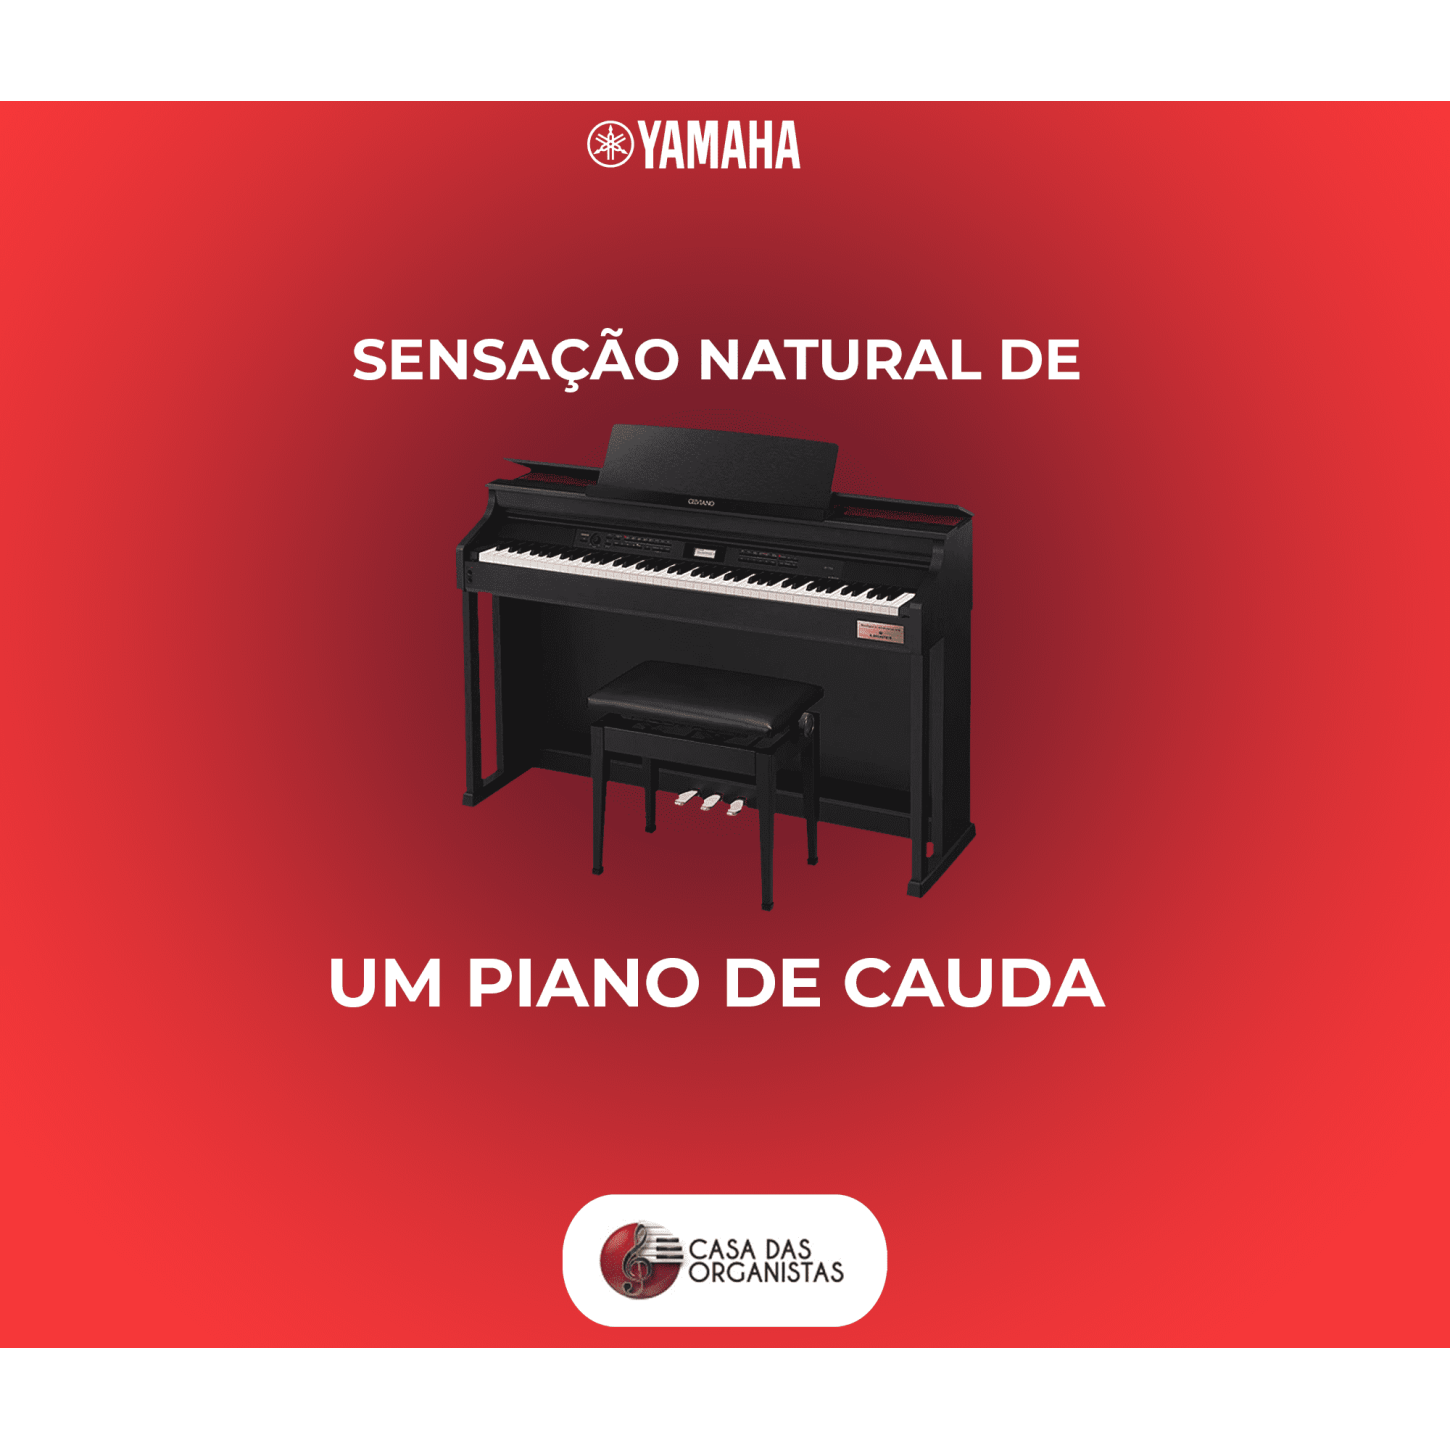 Piano Digital Casio Ap710 Celviano Preto